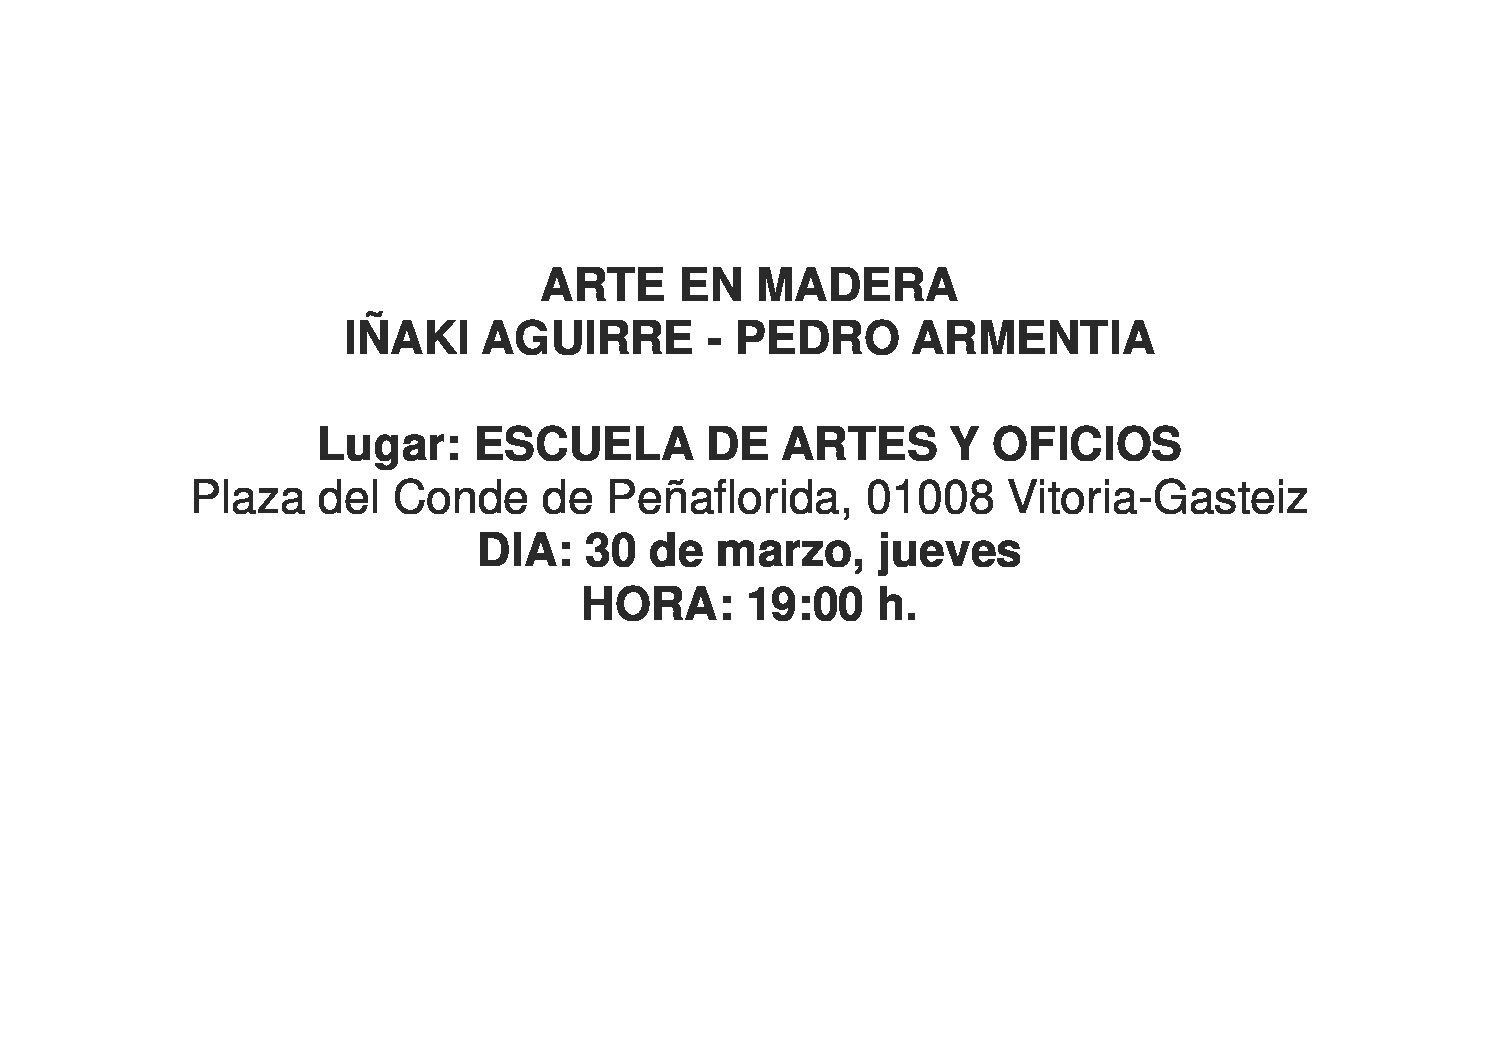 ARTE EN MADERA; Iñaki Aguirre y Pedro Armentia